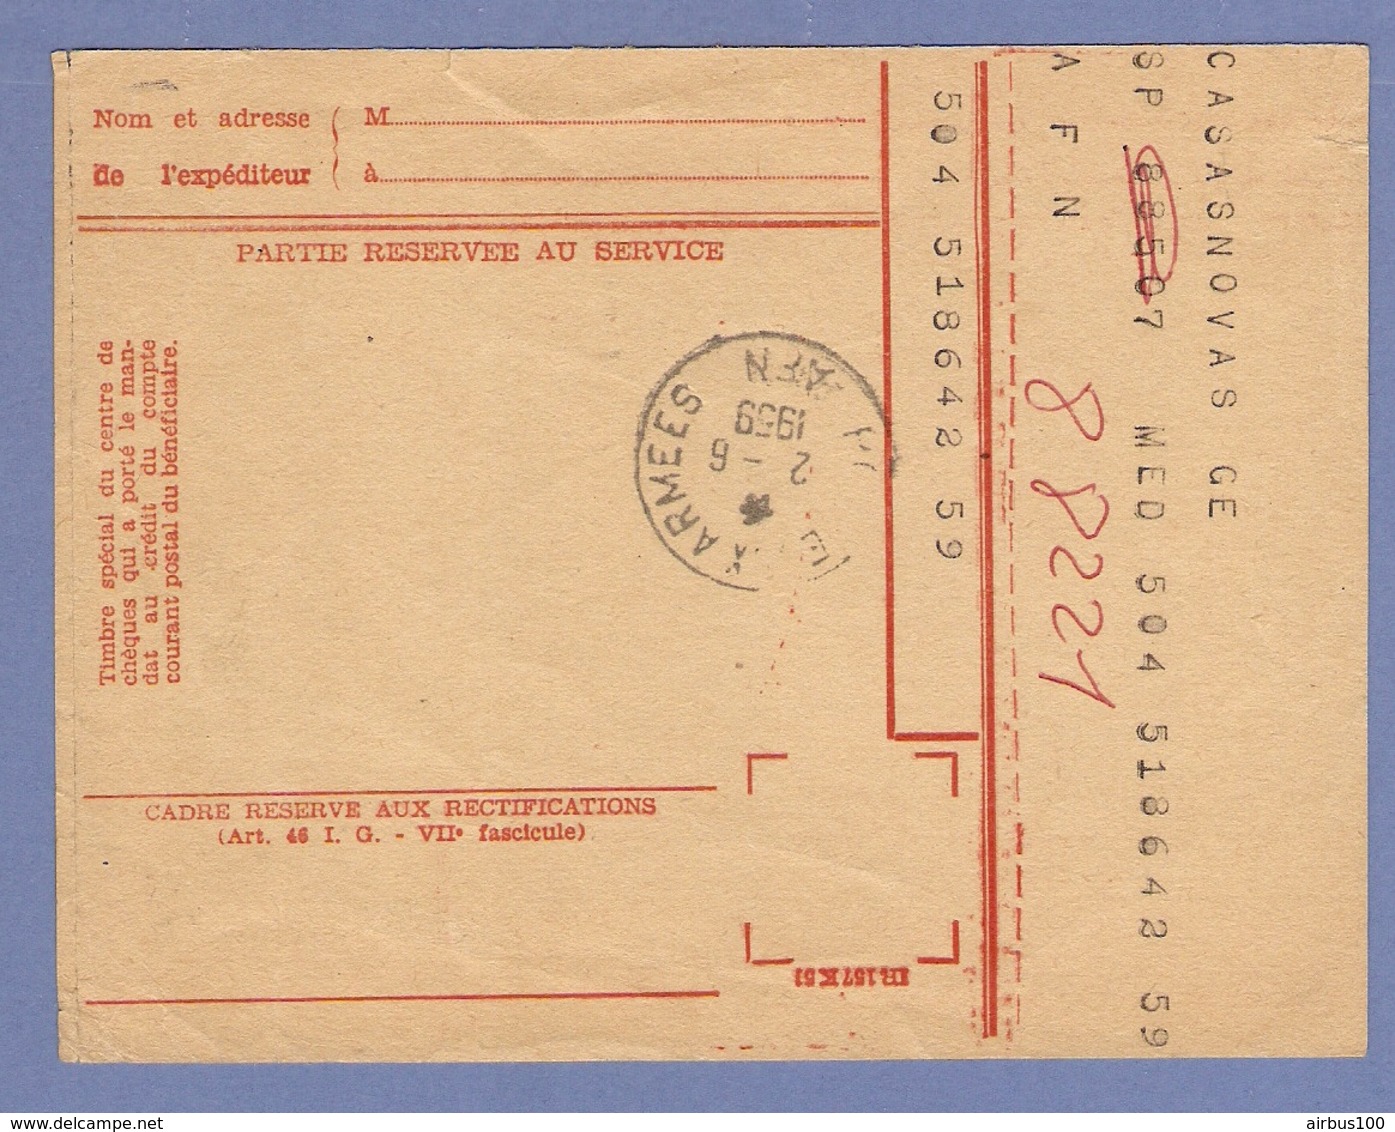 P.T.T. ALGÉRIE POSTE AUX ARMÉES 1959 MANDAT CARTE CHEQUES POSTAUX REDEVANCE RADIODIFFUSION TÉLÉVISION FRANCAISE - Documents De La Poste